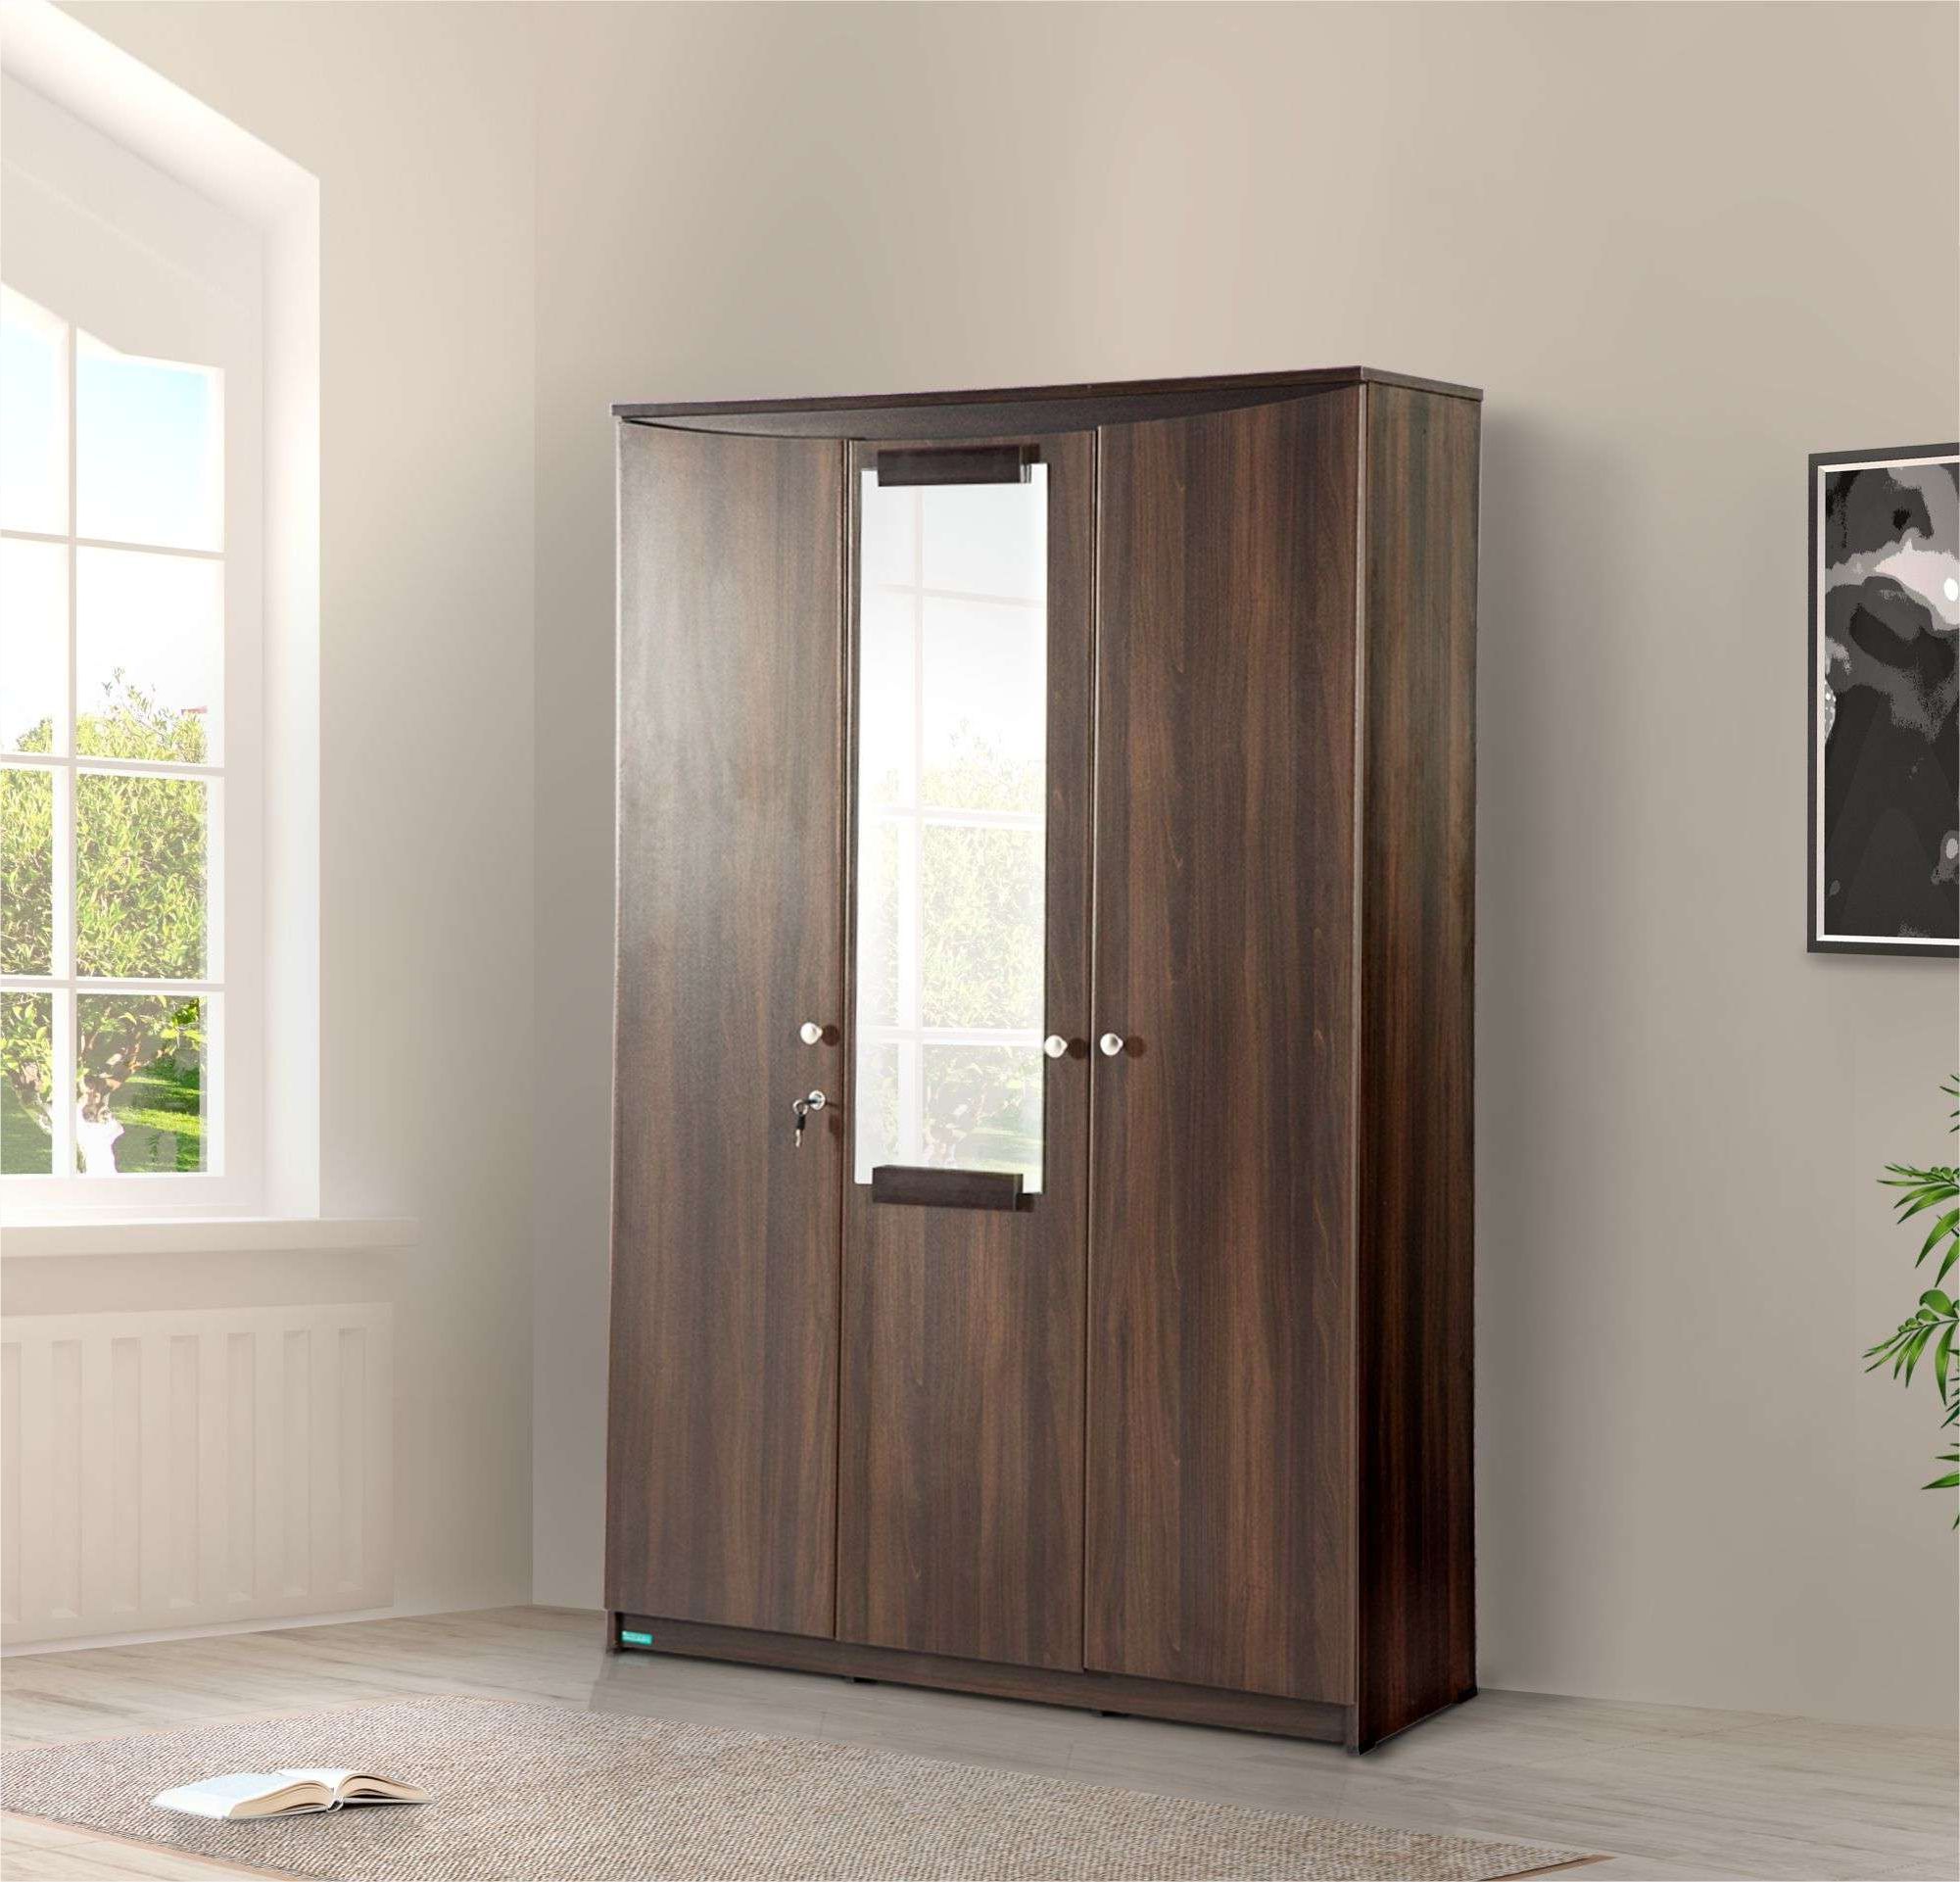 Mercury 3 Door Wardrobe | Damro With Regard To Wardrobes 3 Door With Mirror (Gallery 9 of 20)